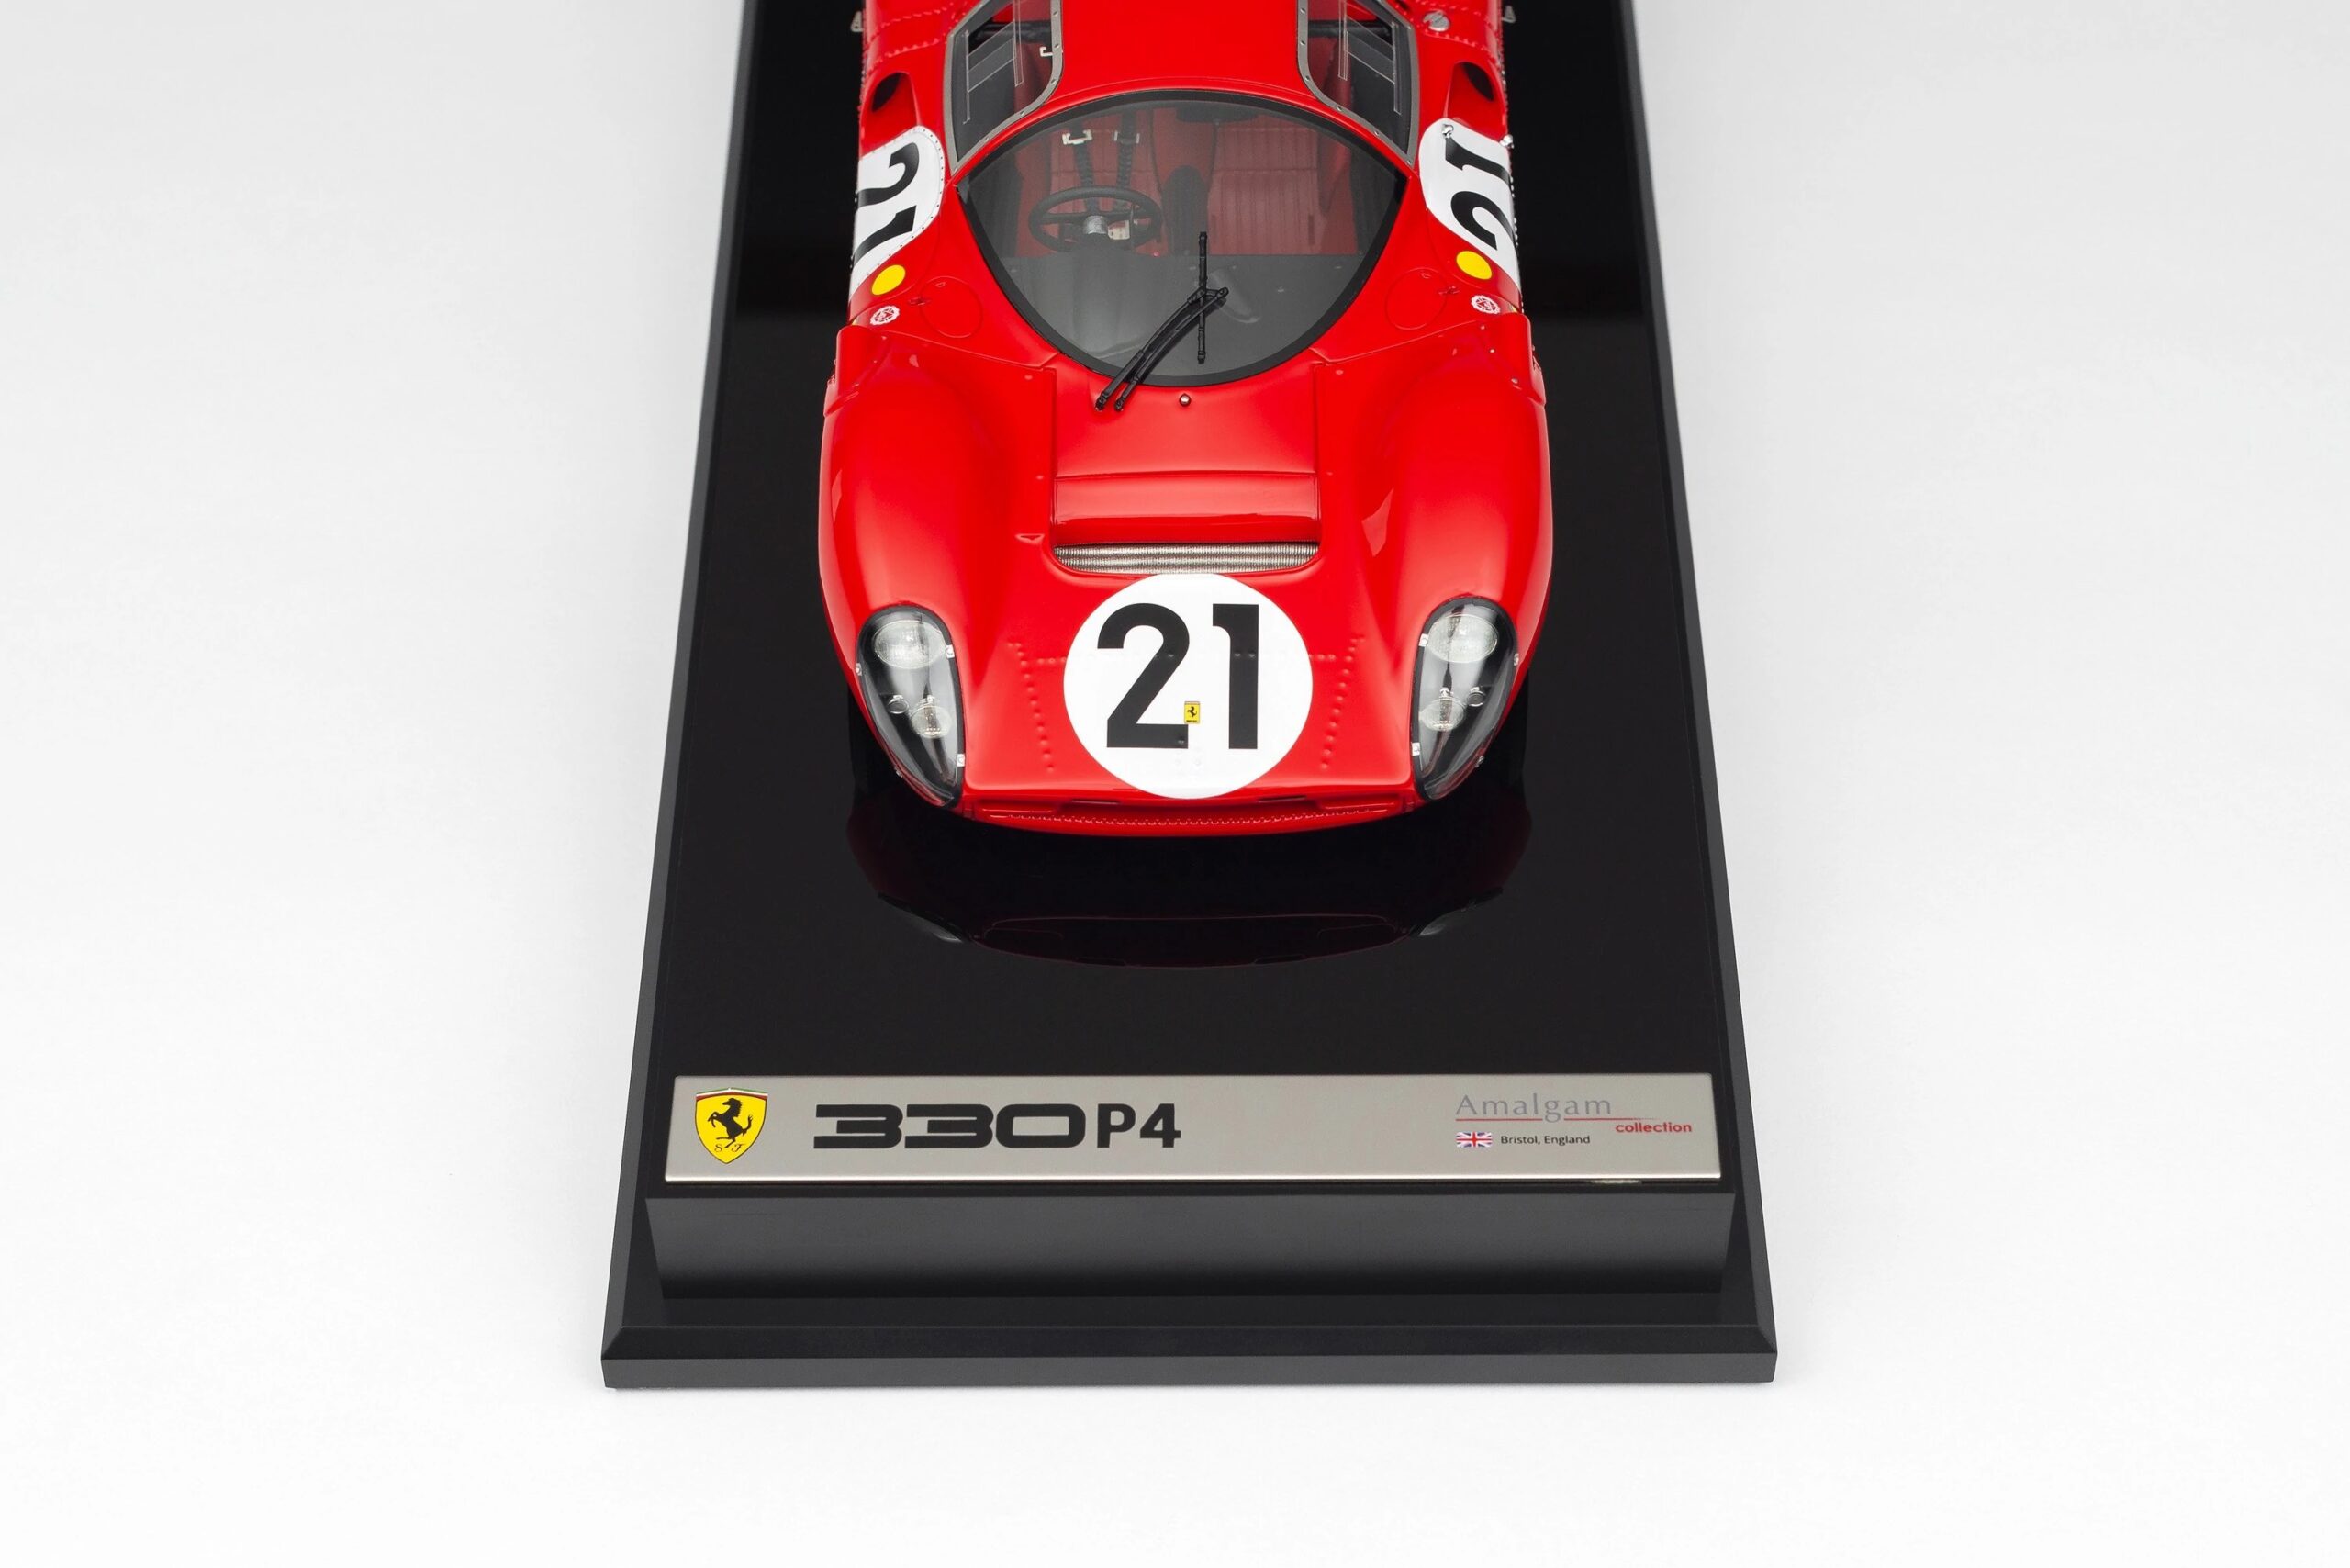 M5933 127 Ferrari 330 P4 0858GT 1.18 Scale Plaque Detail 1 4000x2677 crop center scaled